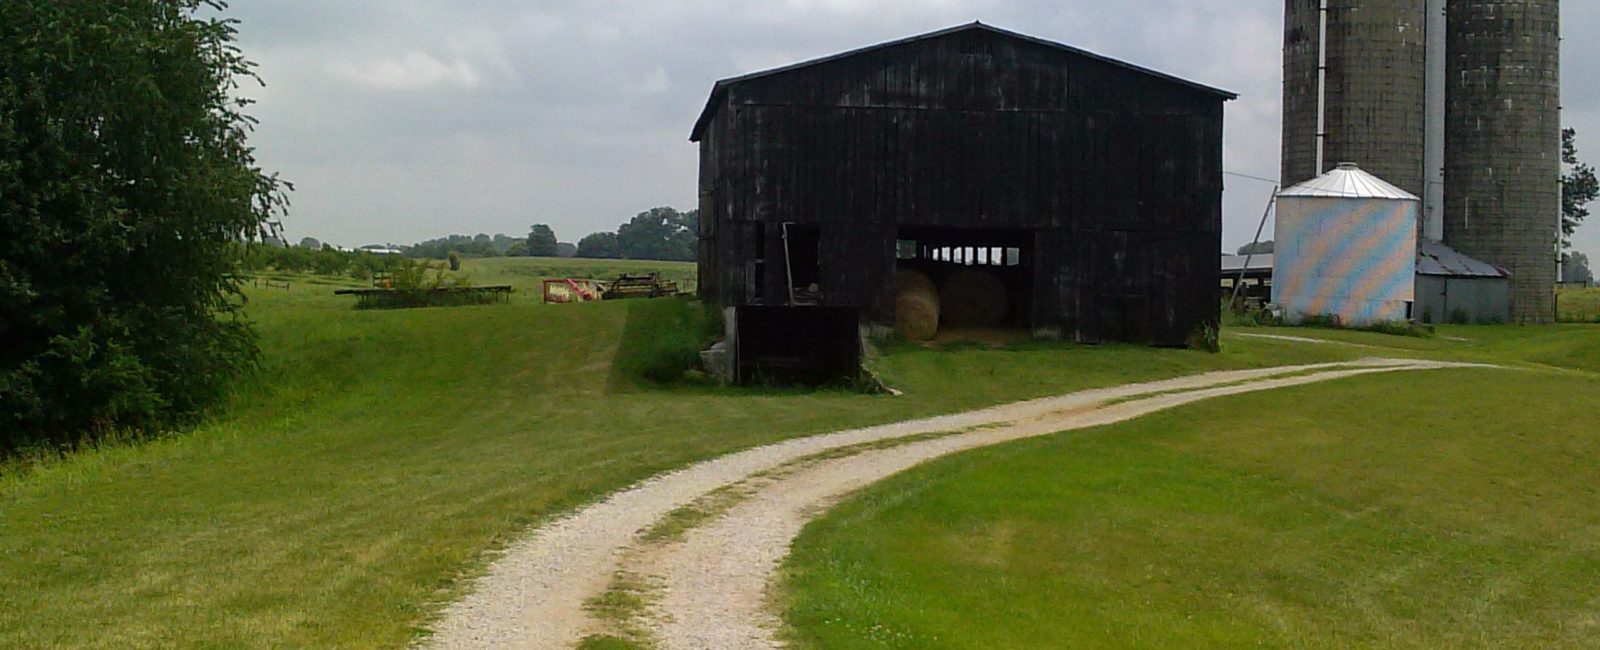 Barn w black silos